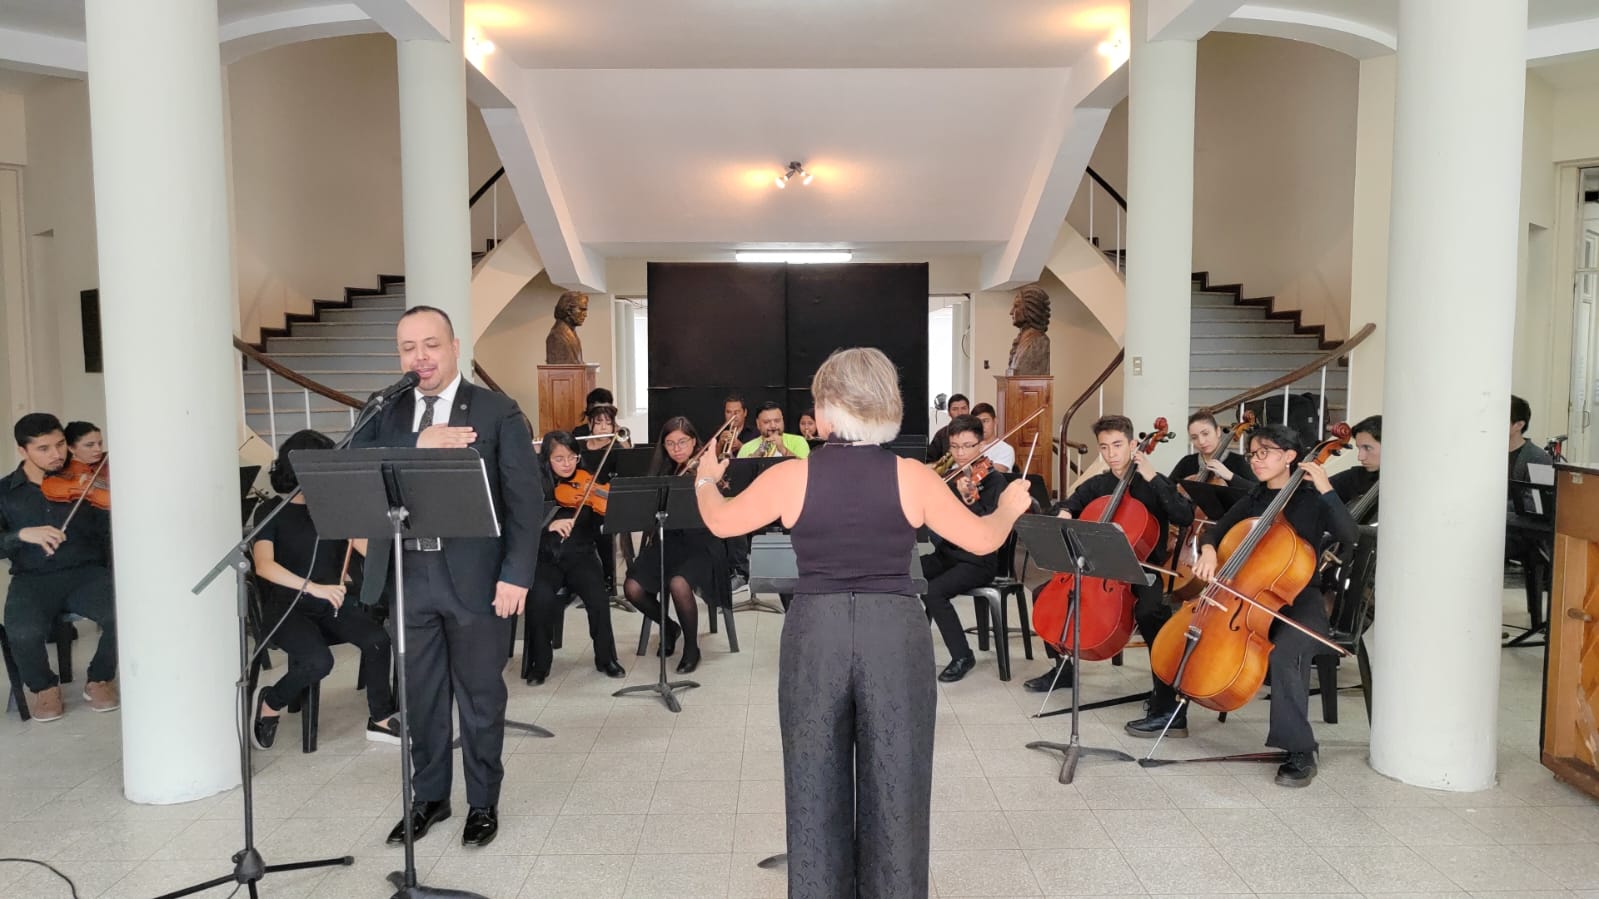 Cerca de 30 estudiantes dieron el primer concierto presencial en el Conservatorio Nacional de Música Germán Alcántara.   (Foto Prensa Libre: Ingrid Reyes)